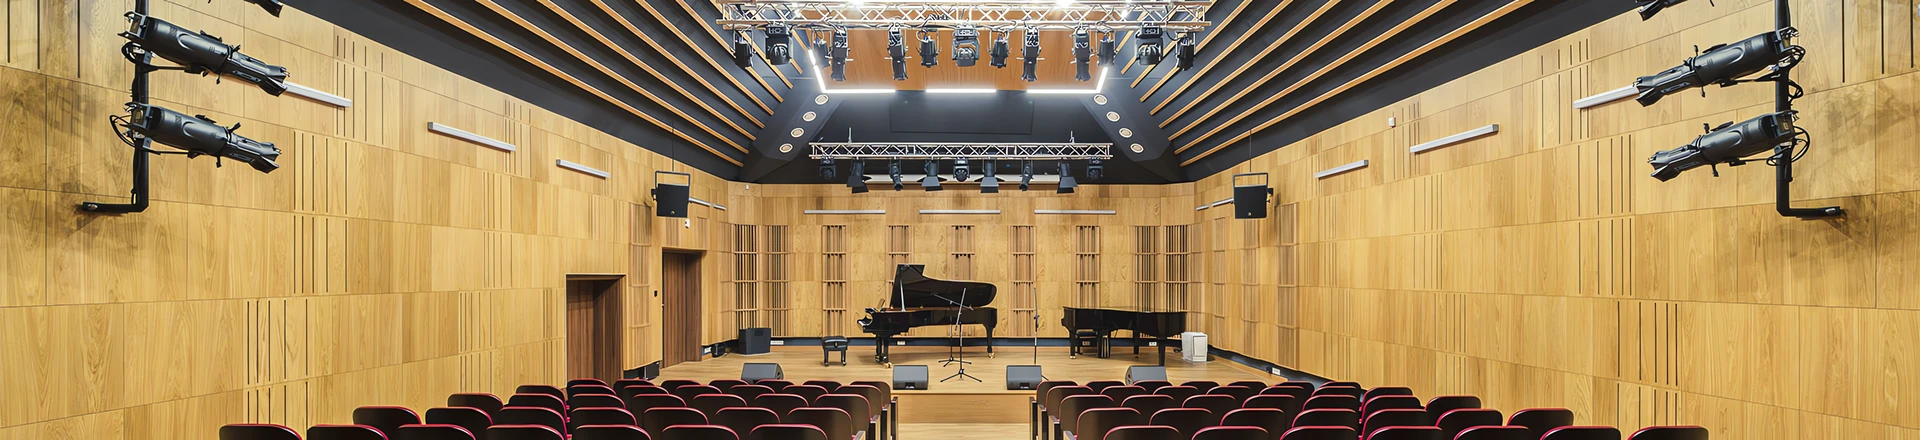 Ciekawe instalacje: Systemy L-Acoustics w sali koncertowej szkoły muzycznej w Zambrowie